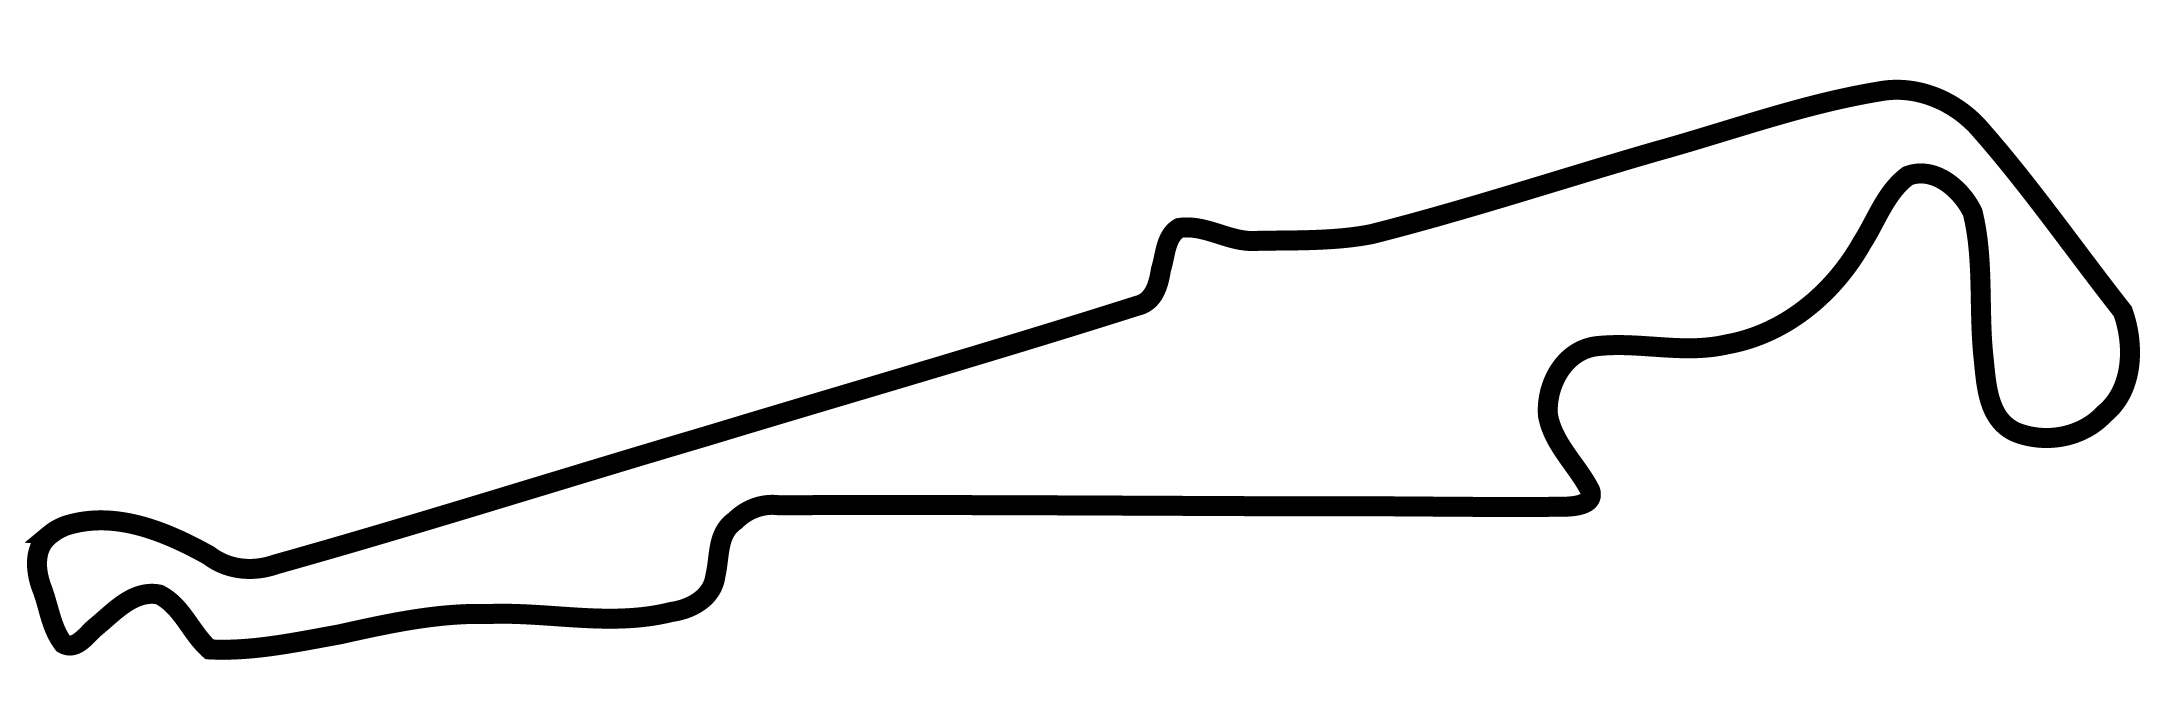 Trophée Tourisme Endurance course automobile Paul Ricard